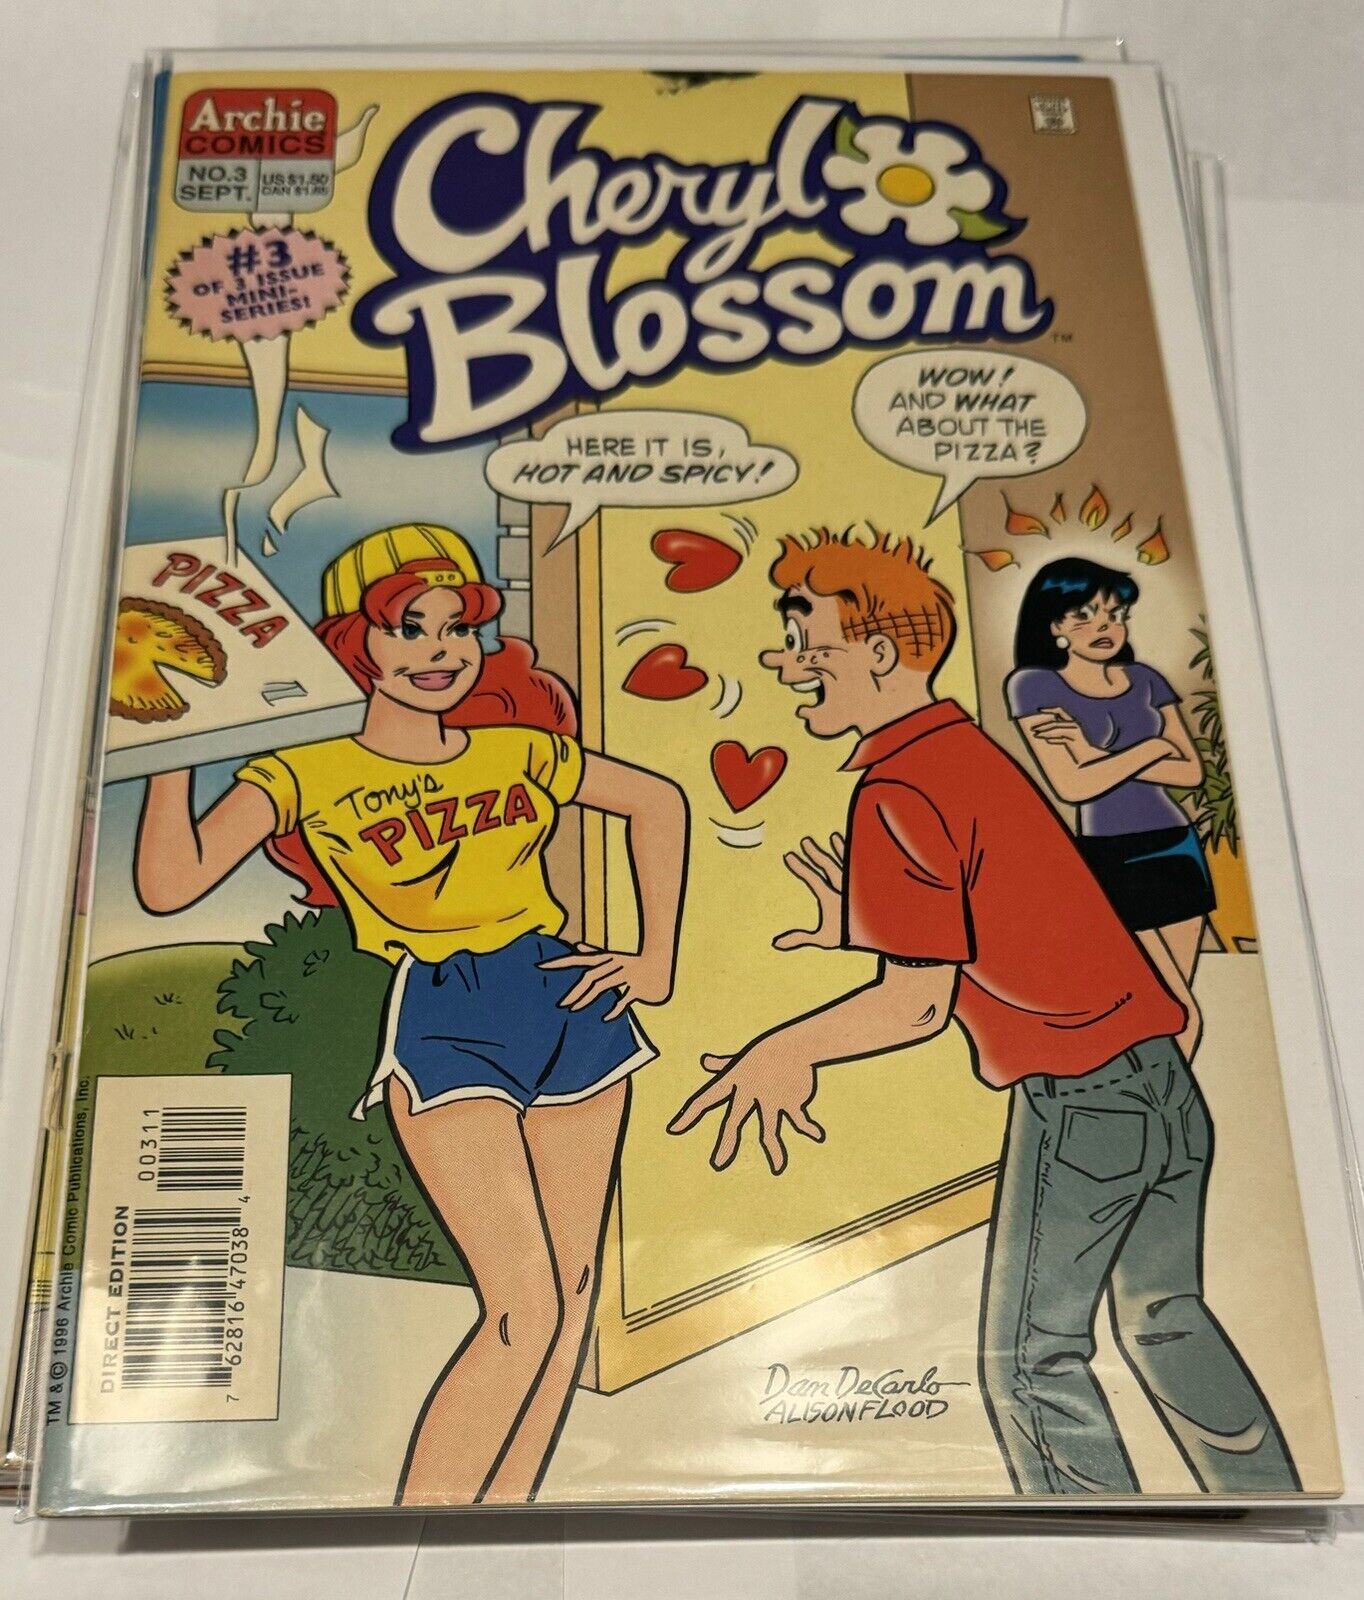 Archie Comics - Cheryl Blossom No. 3 September 1996 very good condition